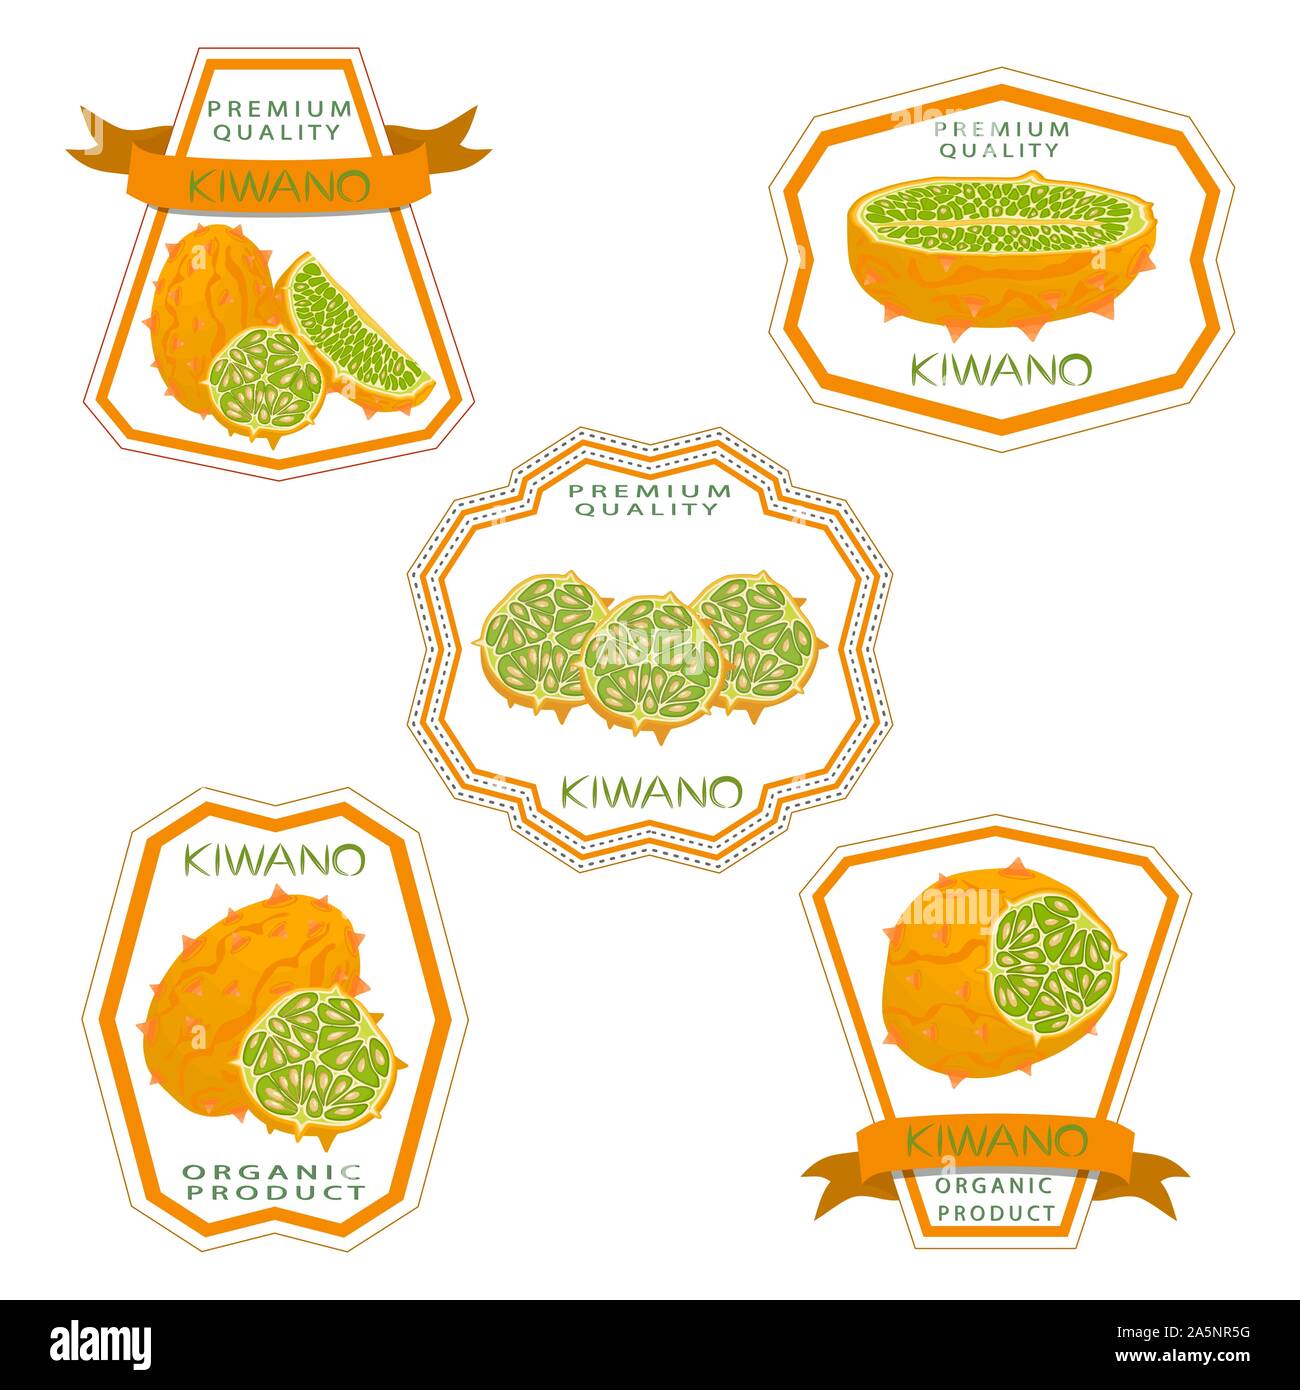 Abbildung auf Thema große verschiedene afrikanische kiwano, grüne Stengel, Melone verschiedener Größe. Kiwano Muster bestehend aus Sammlung Mahlzeit Melone für o Stock Vektor